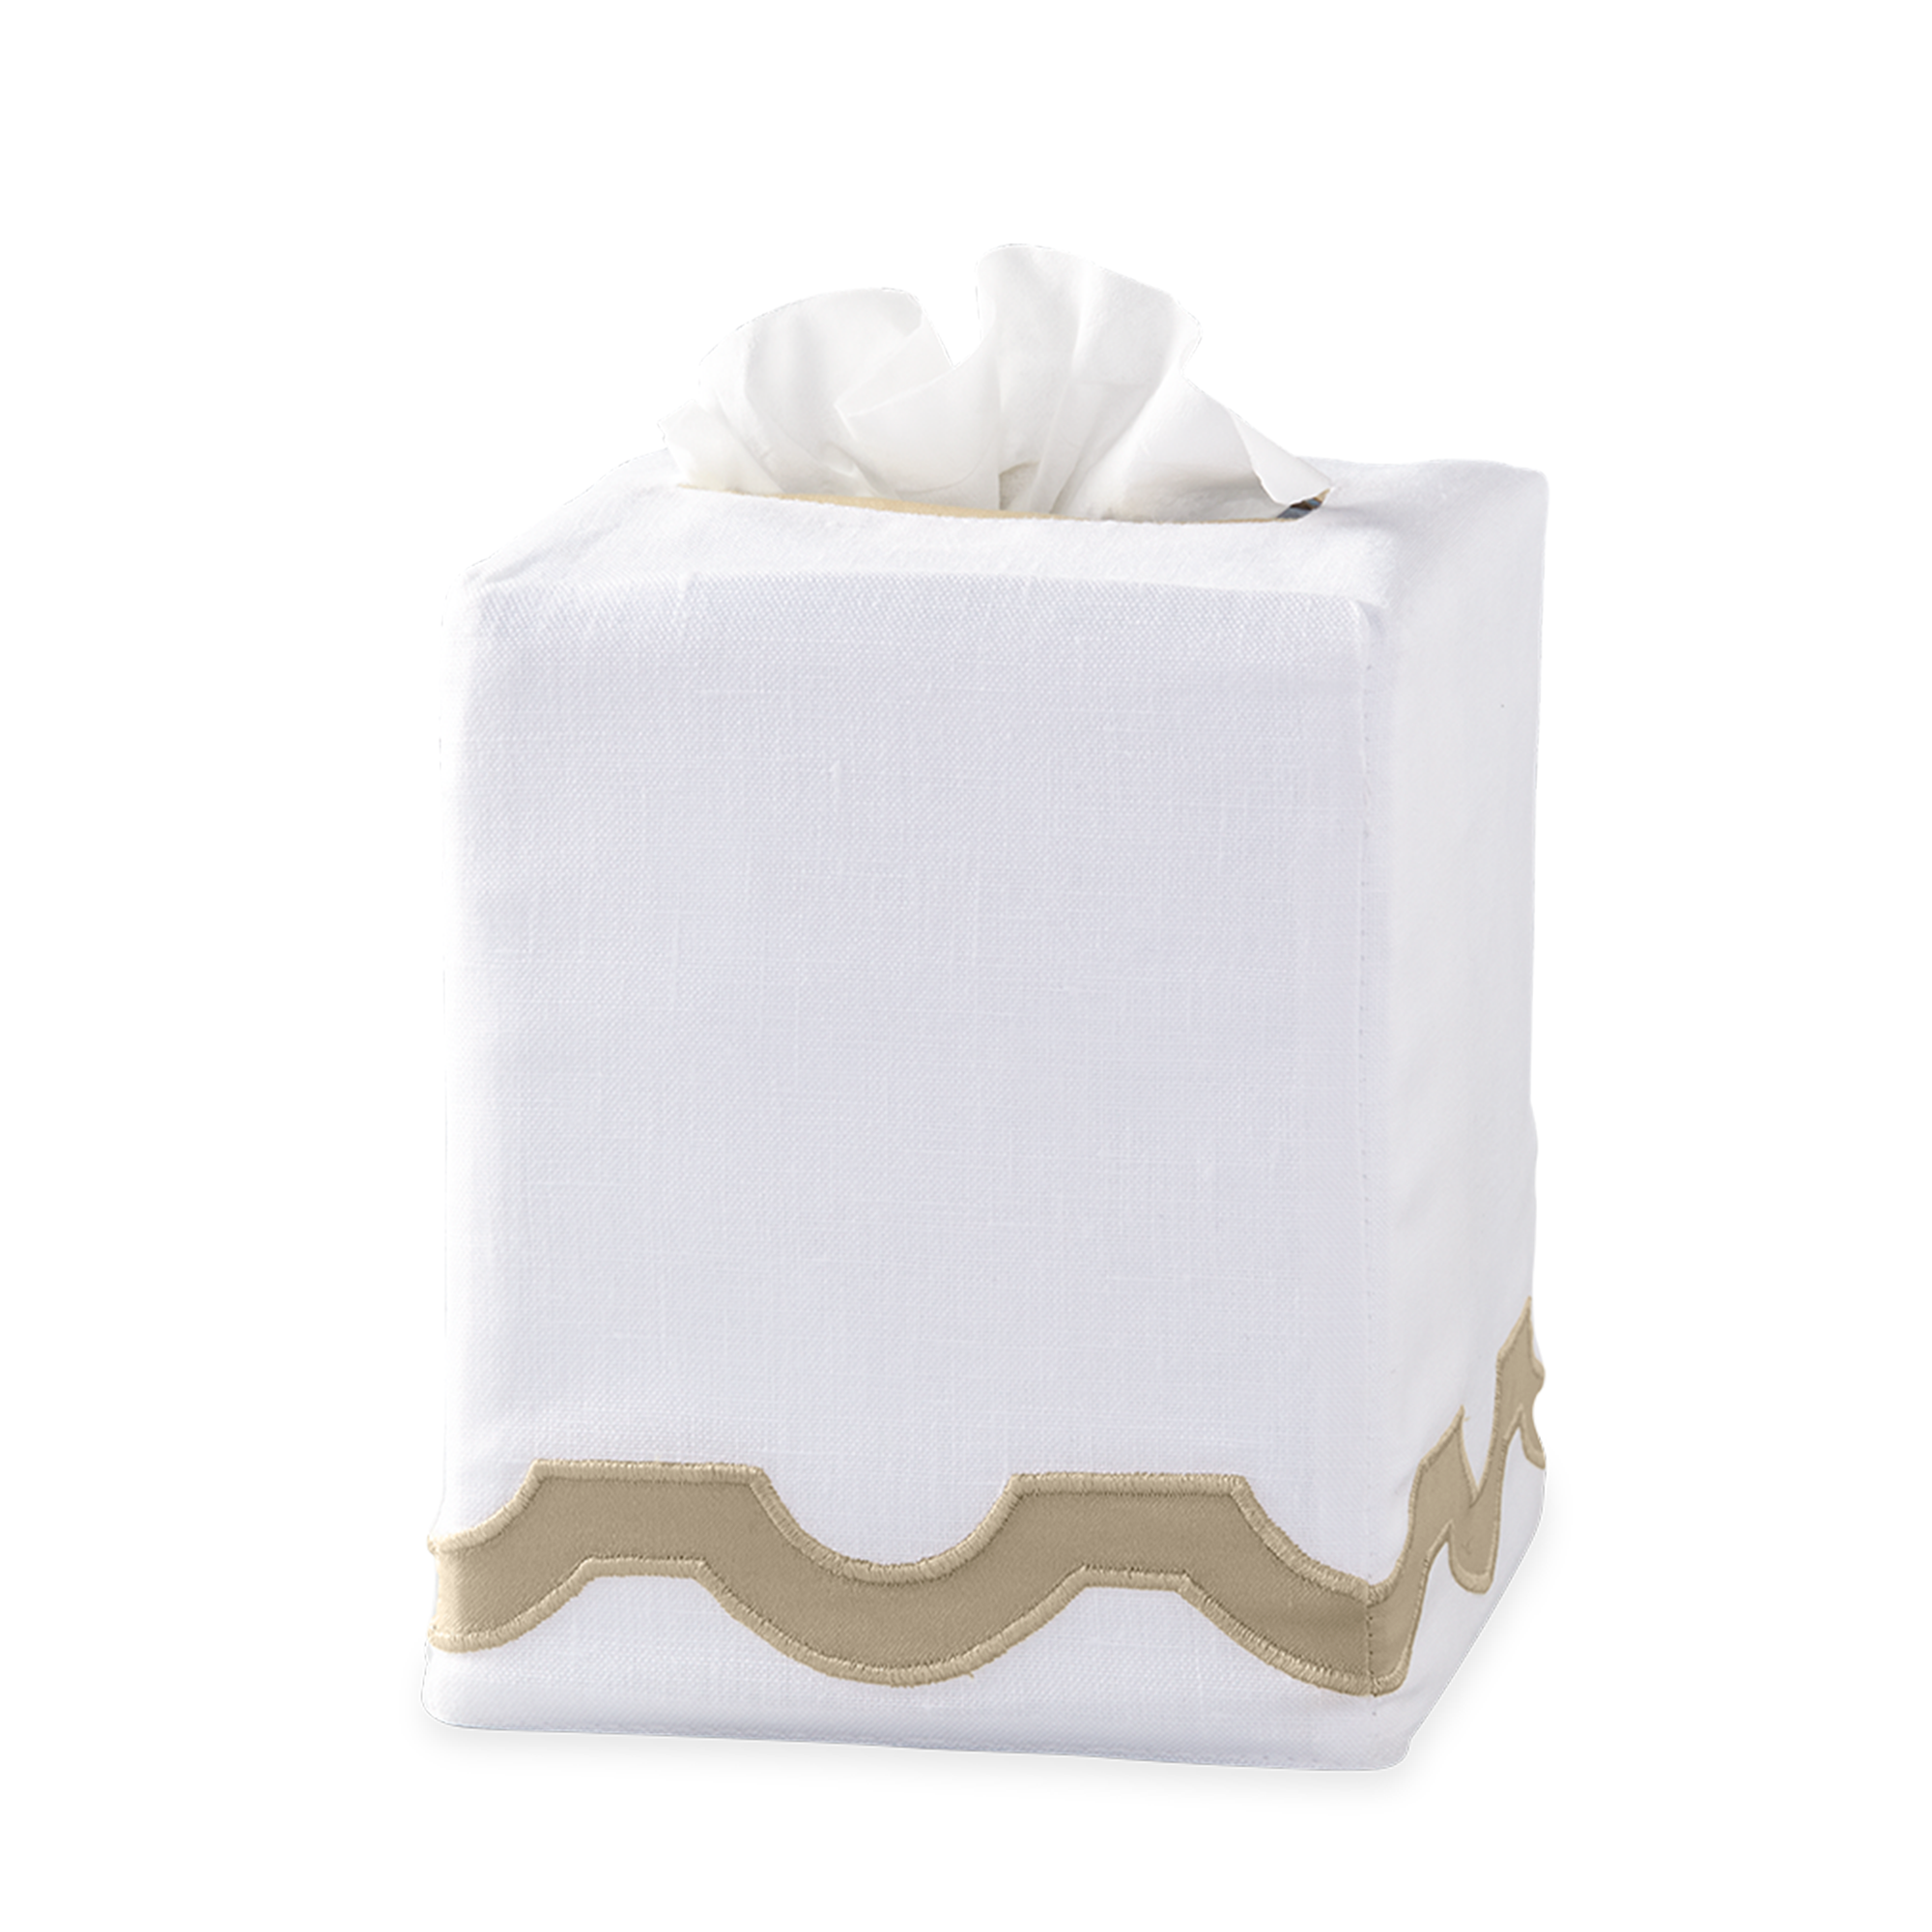 Silo Image of Matouk Mirasol Tissue Box Cover in Champagne Color